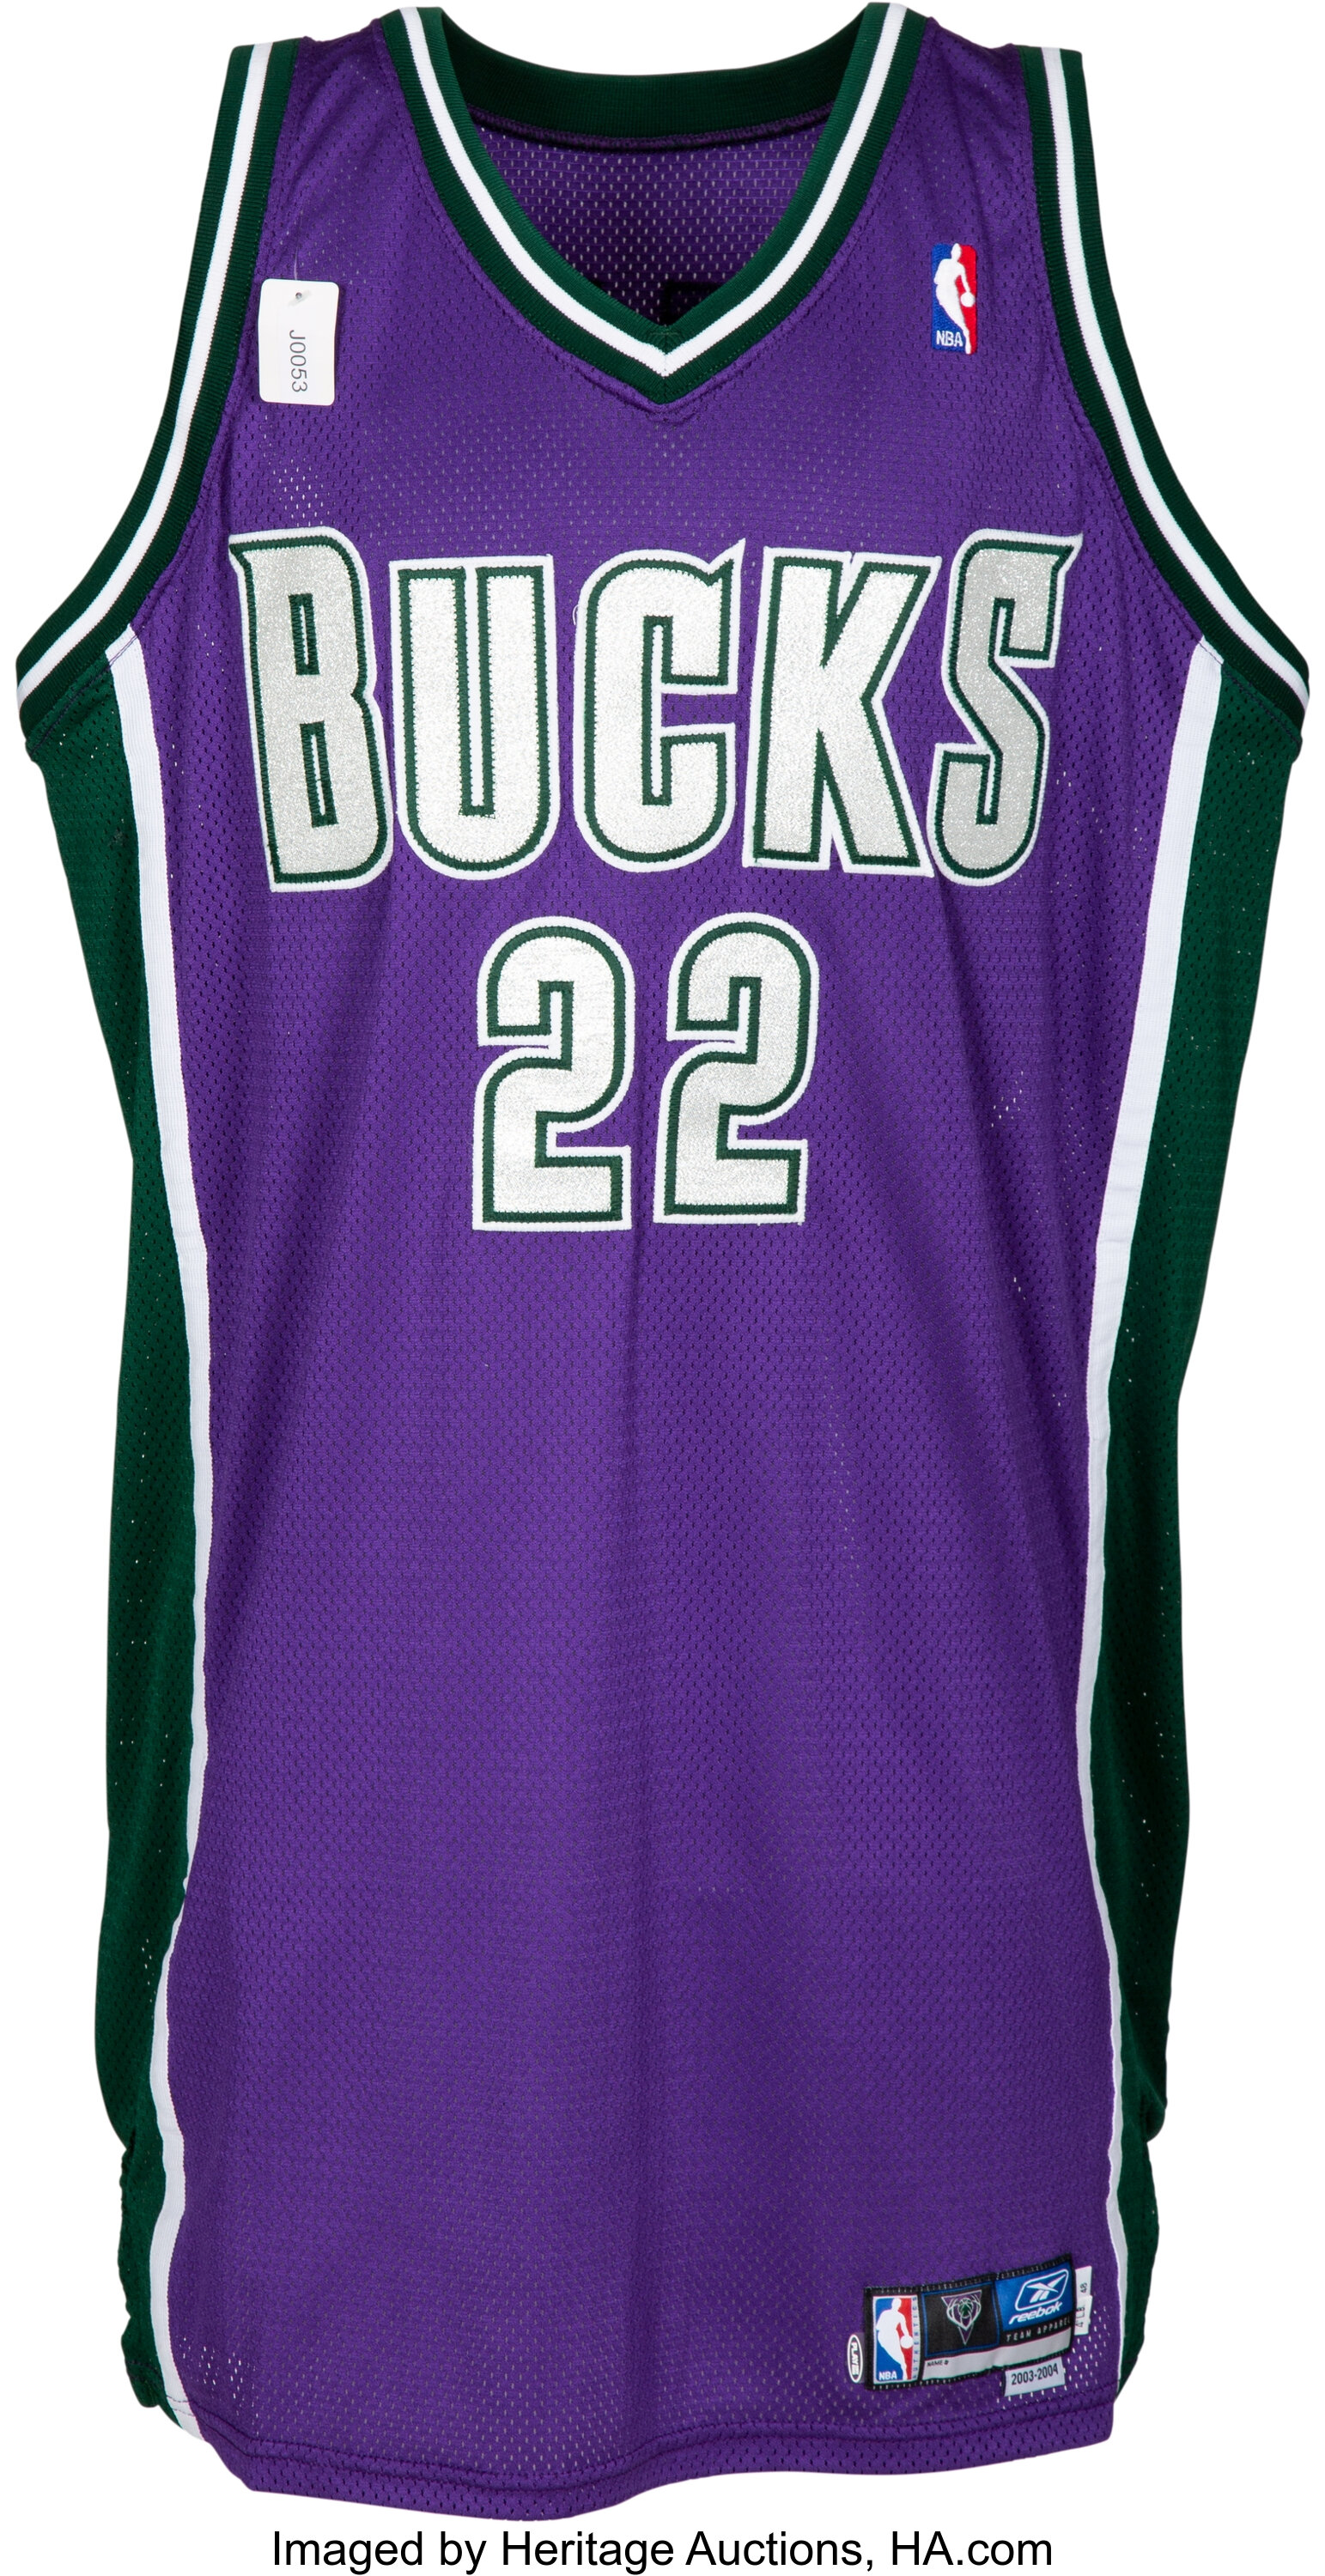 New Milwaukee Bucks jerseys LEAKED! - Basketball Forever